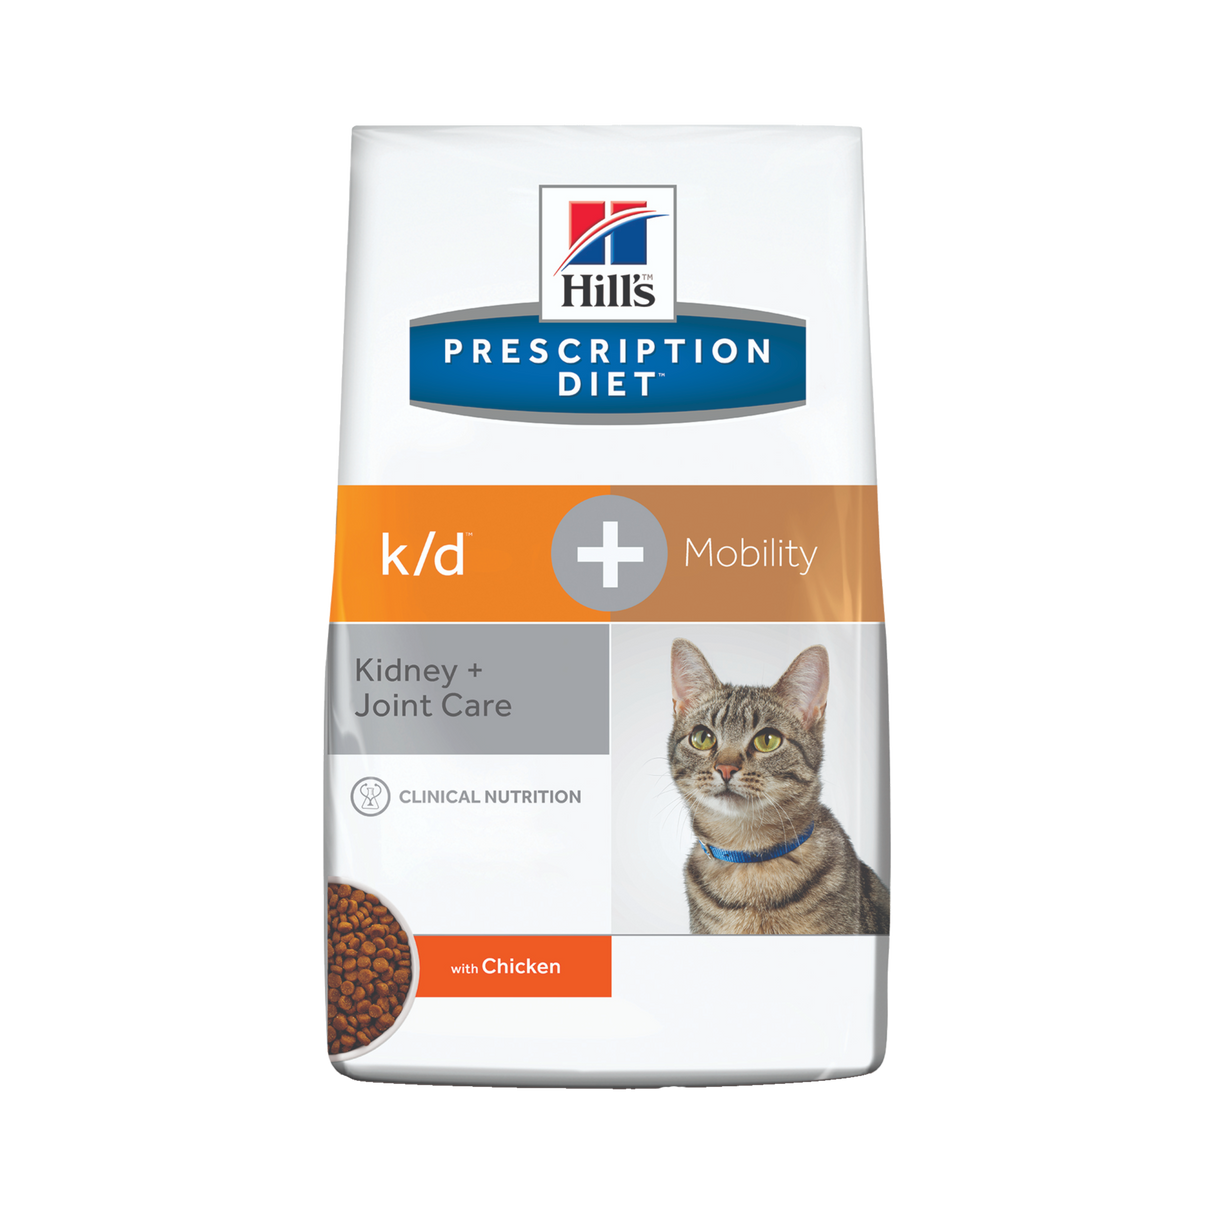 Hill's PRESCRIPTION DIET k/d + Mobility tørfoder til katte med kylling 5kg pose